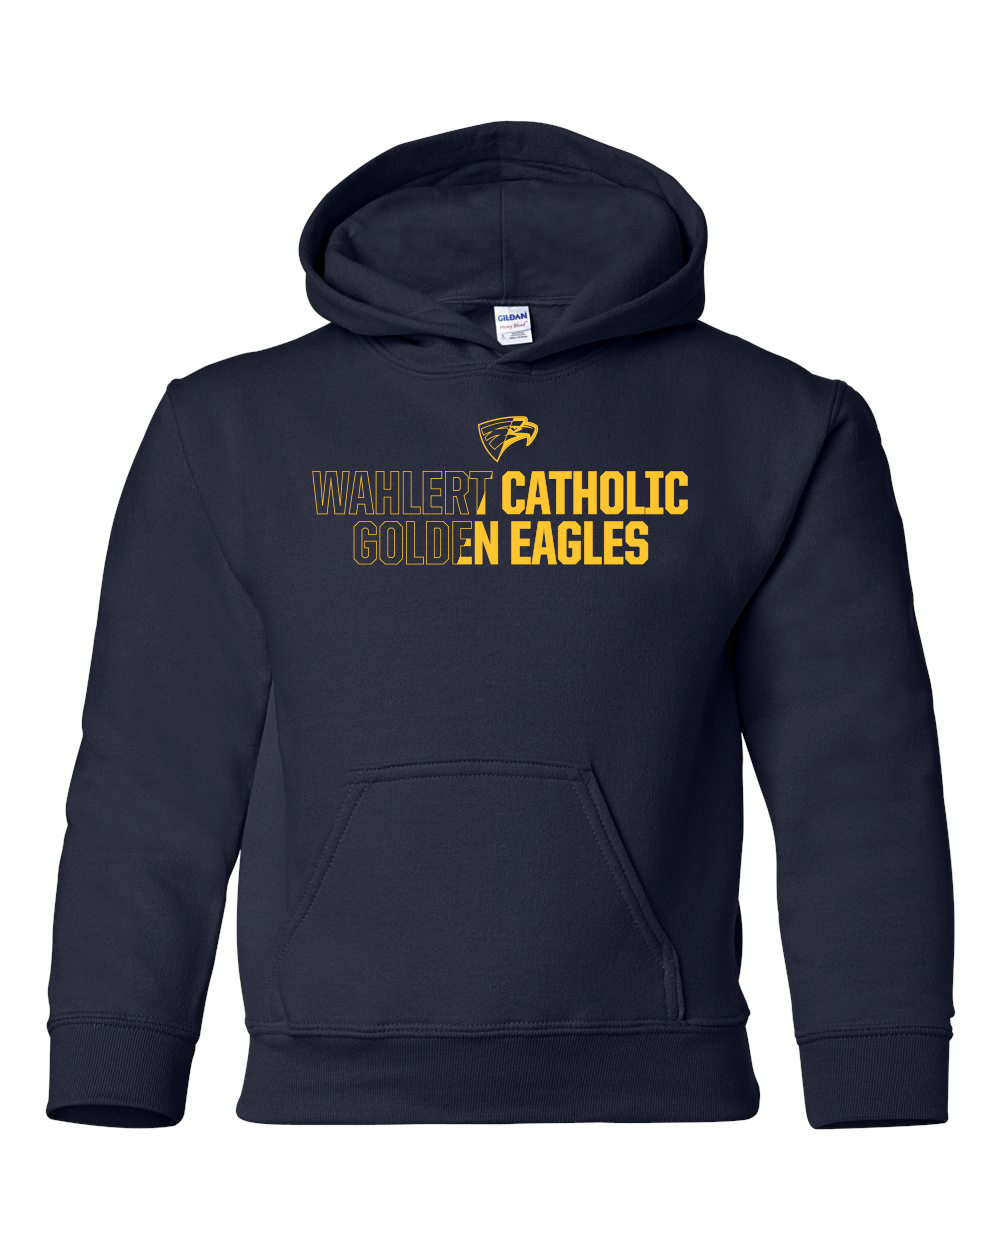 18500B - WAHLERT CATHOLIC 2 TONED SPIRIT - Youth Heavy Blend Hooded Sweatshirt